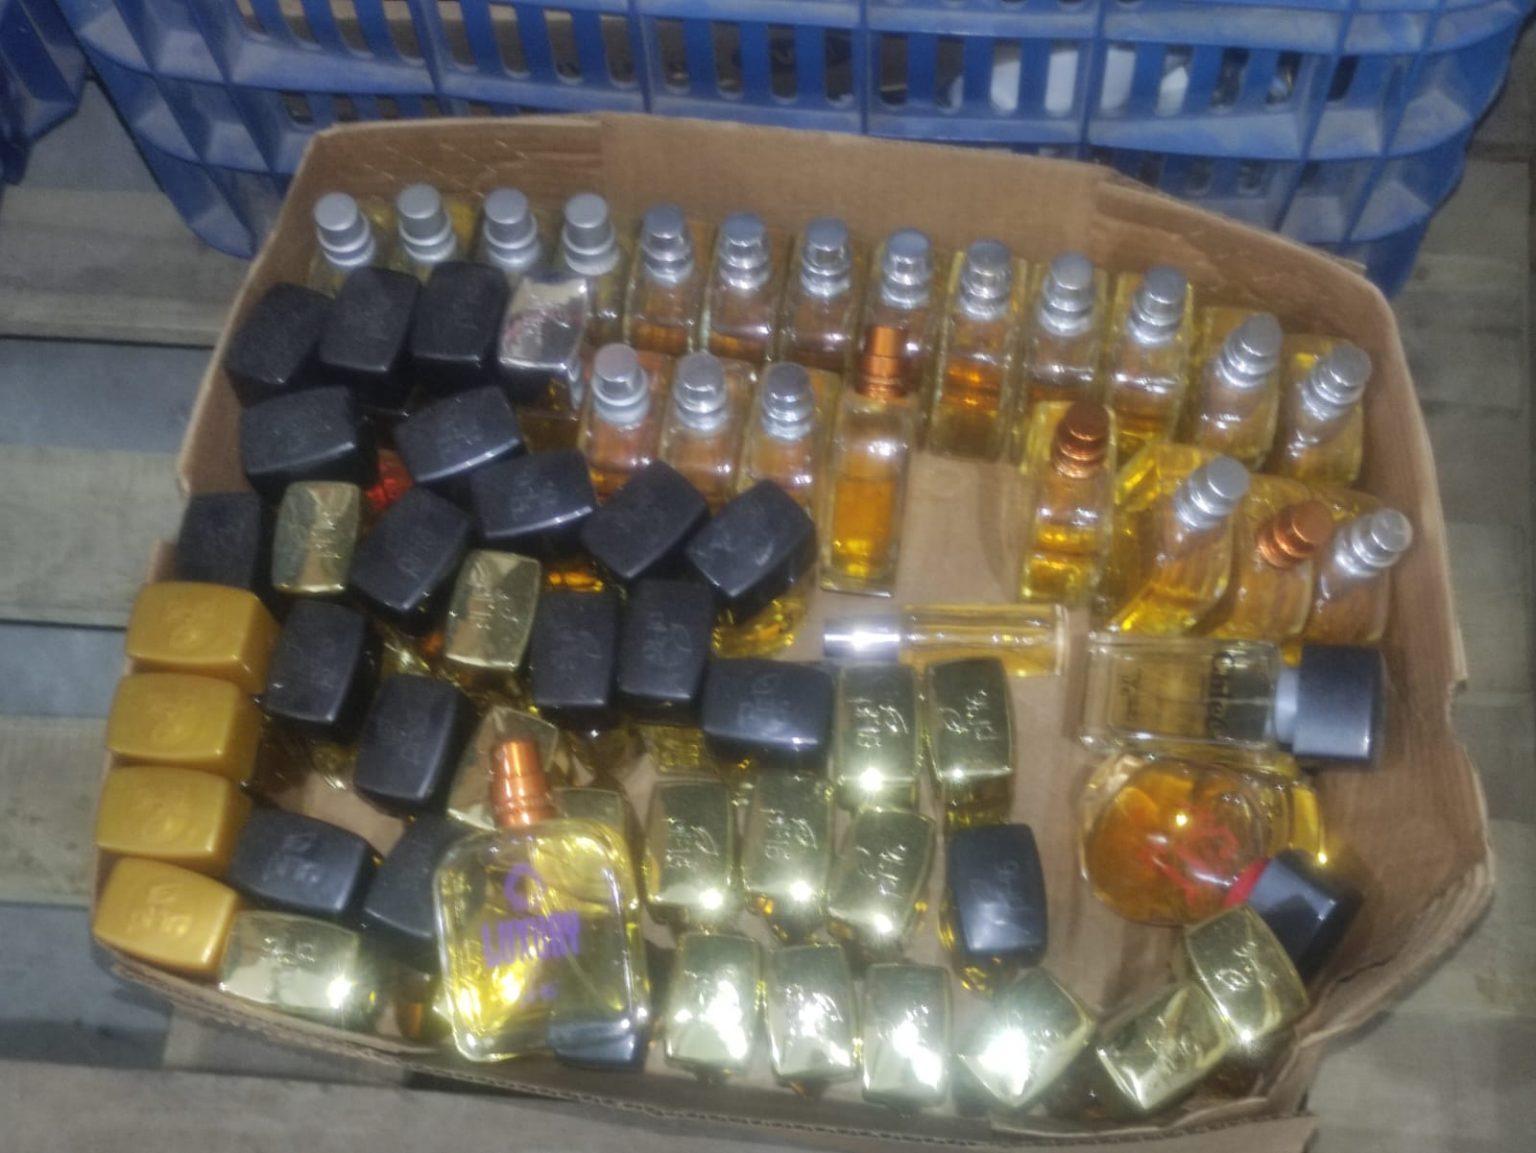 Fábrica clandestina de perfumes é localizada pela polícia em Campinas